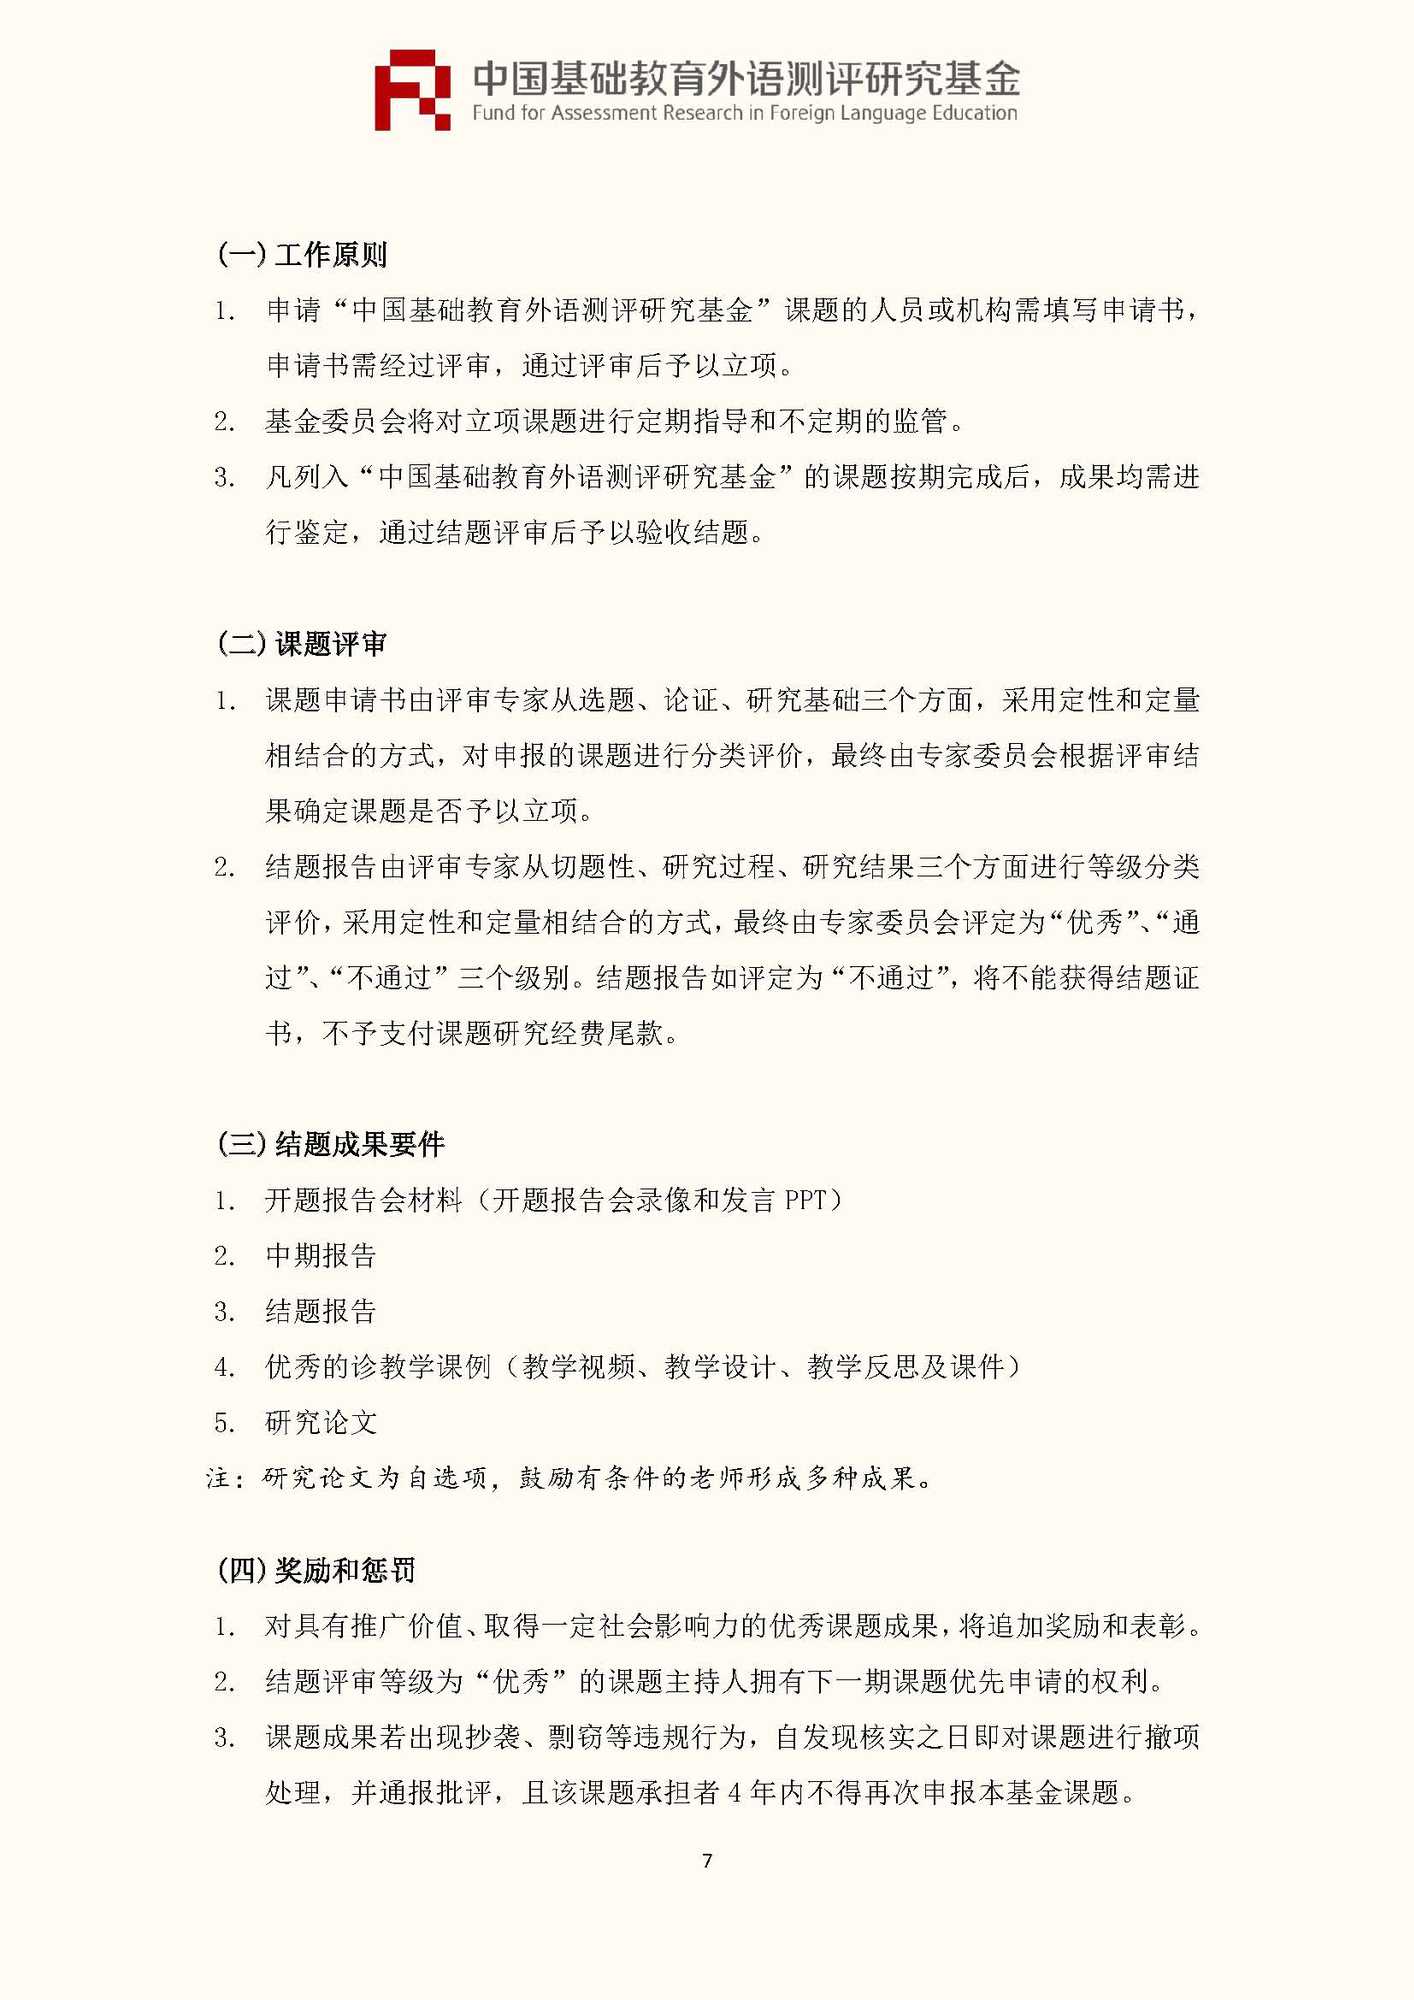 文件1：“中国基础教育外语测评研究基金”第三期课题申报指南_页面_09